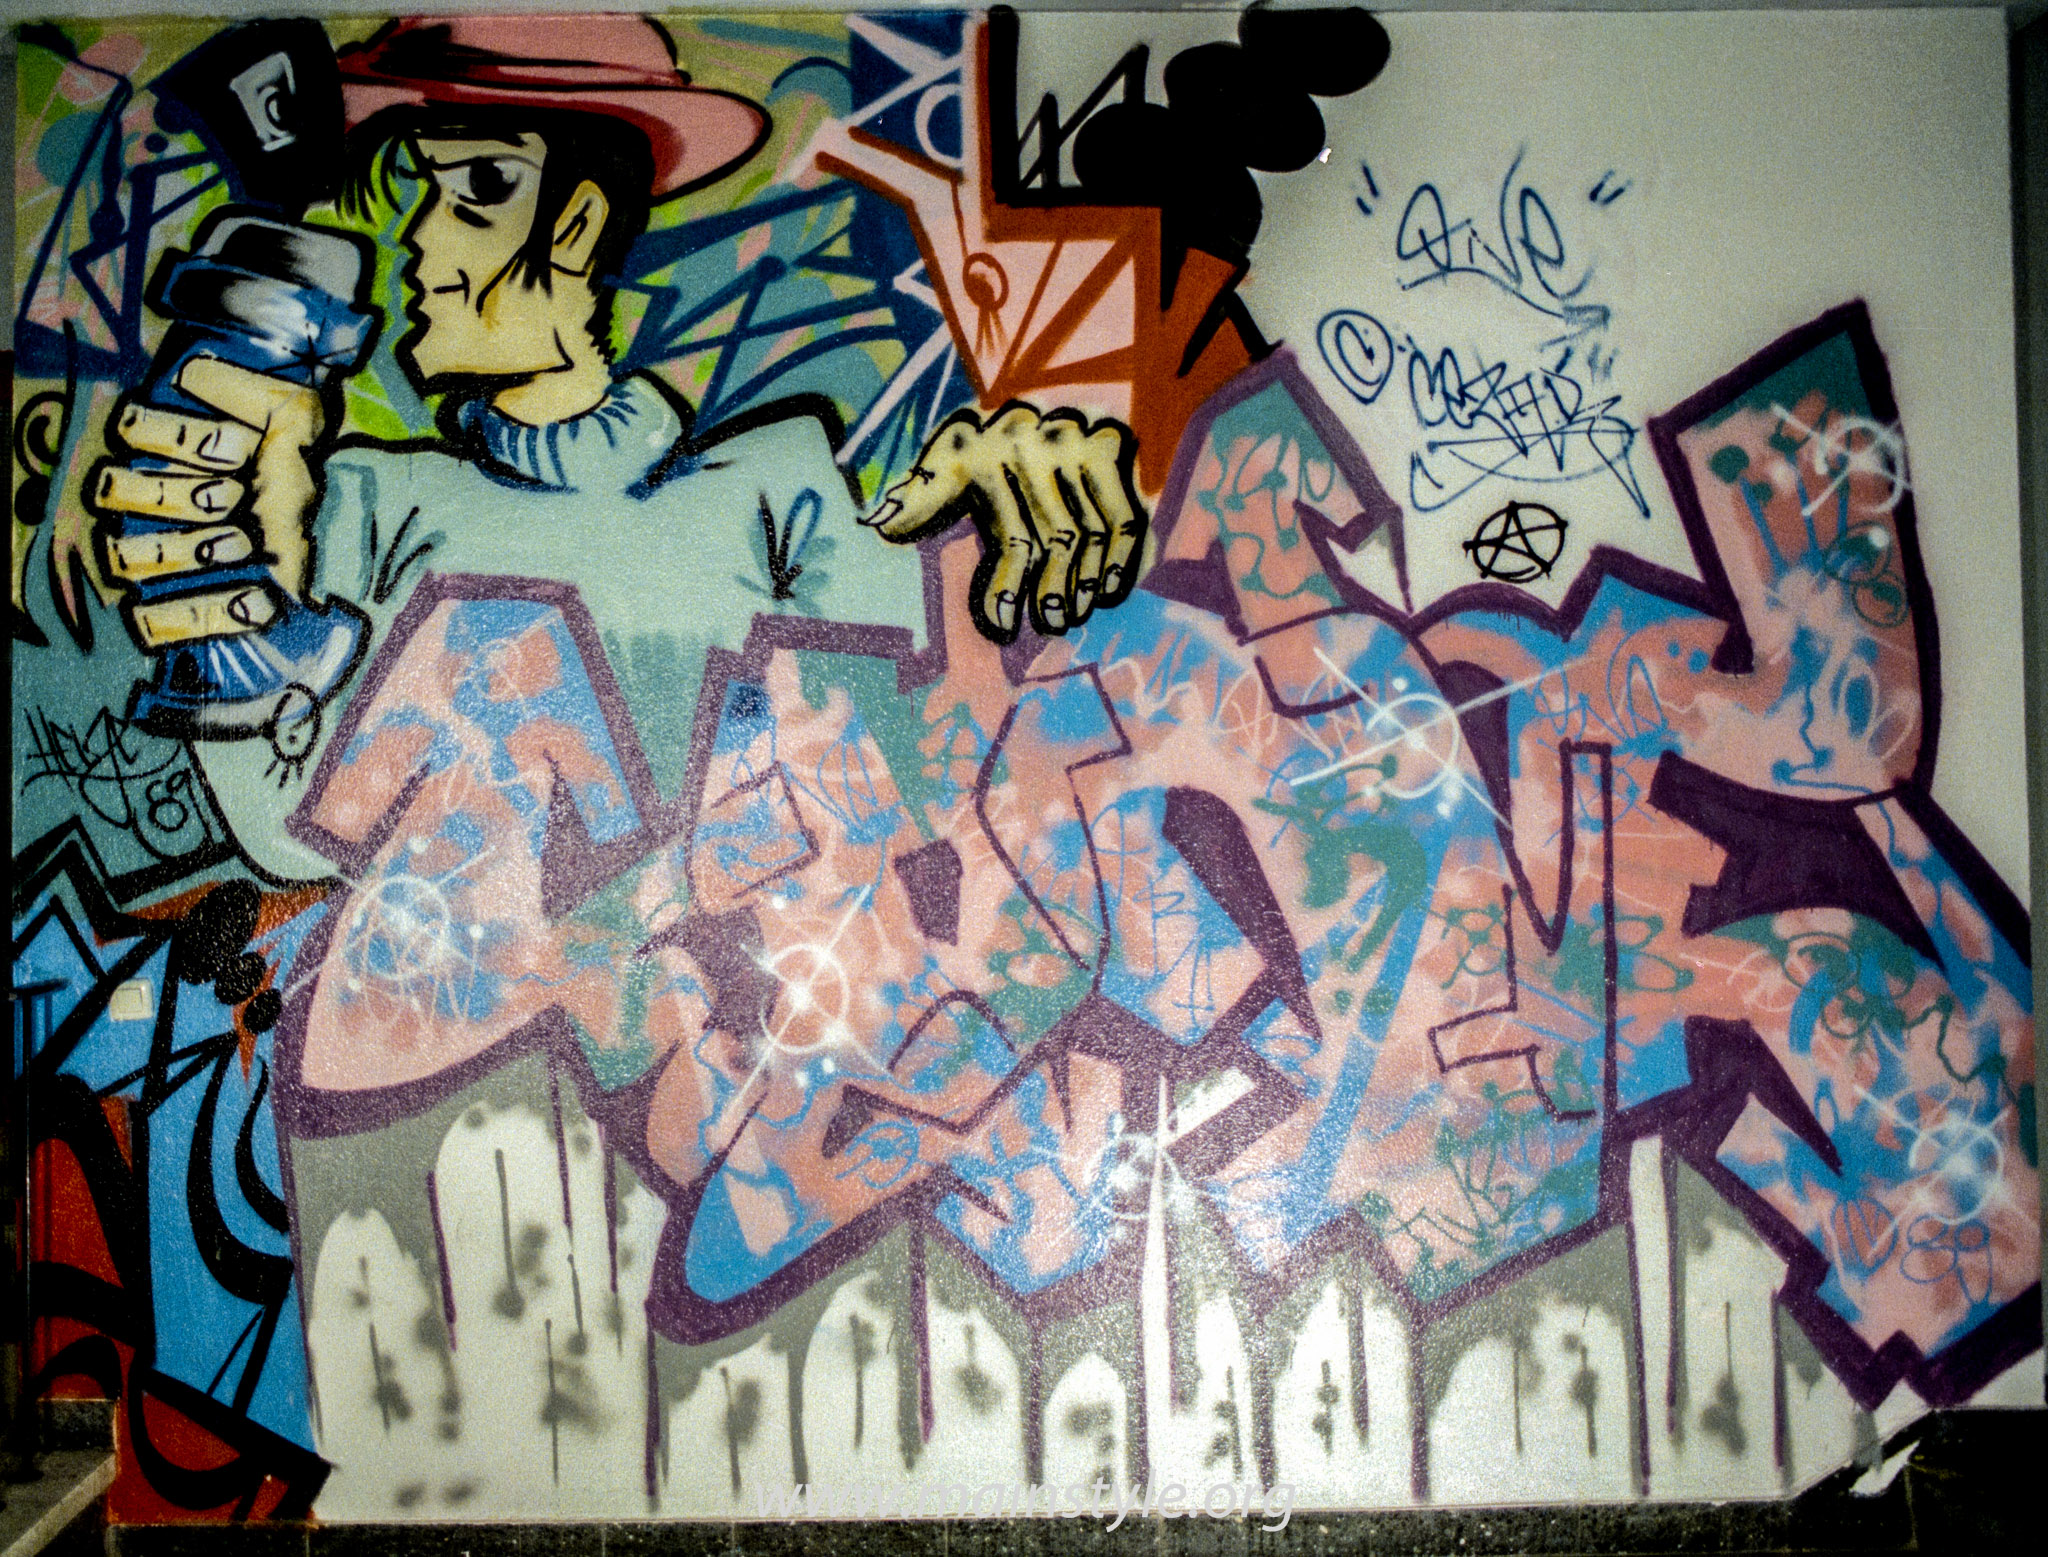 Graffiti_Frankfurt_JUZ Gallus 1989 (3 von 3)